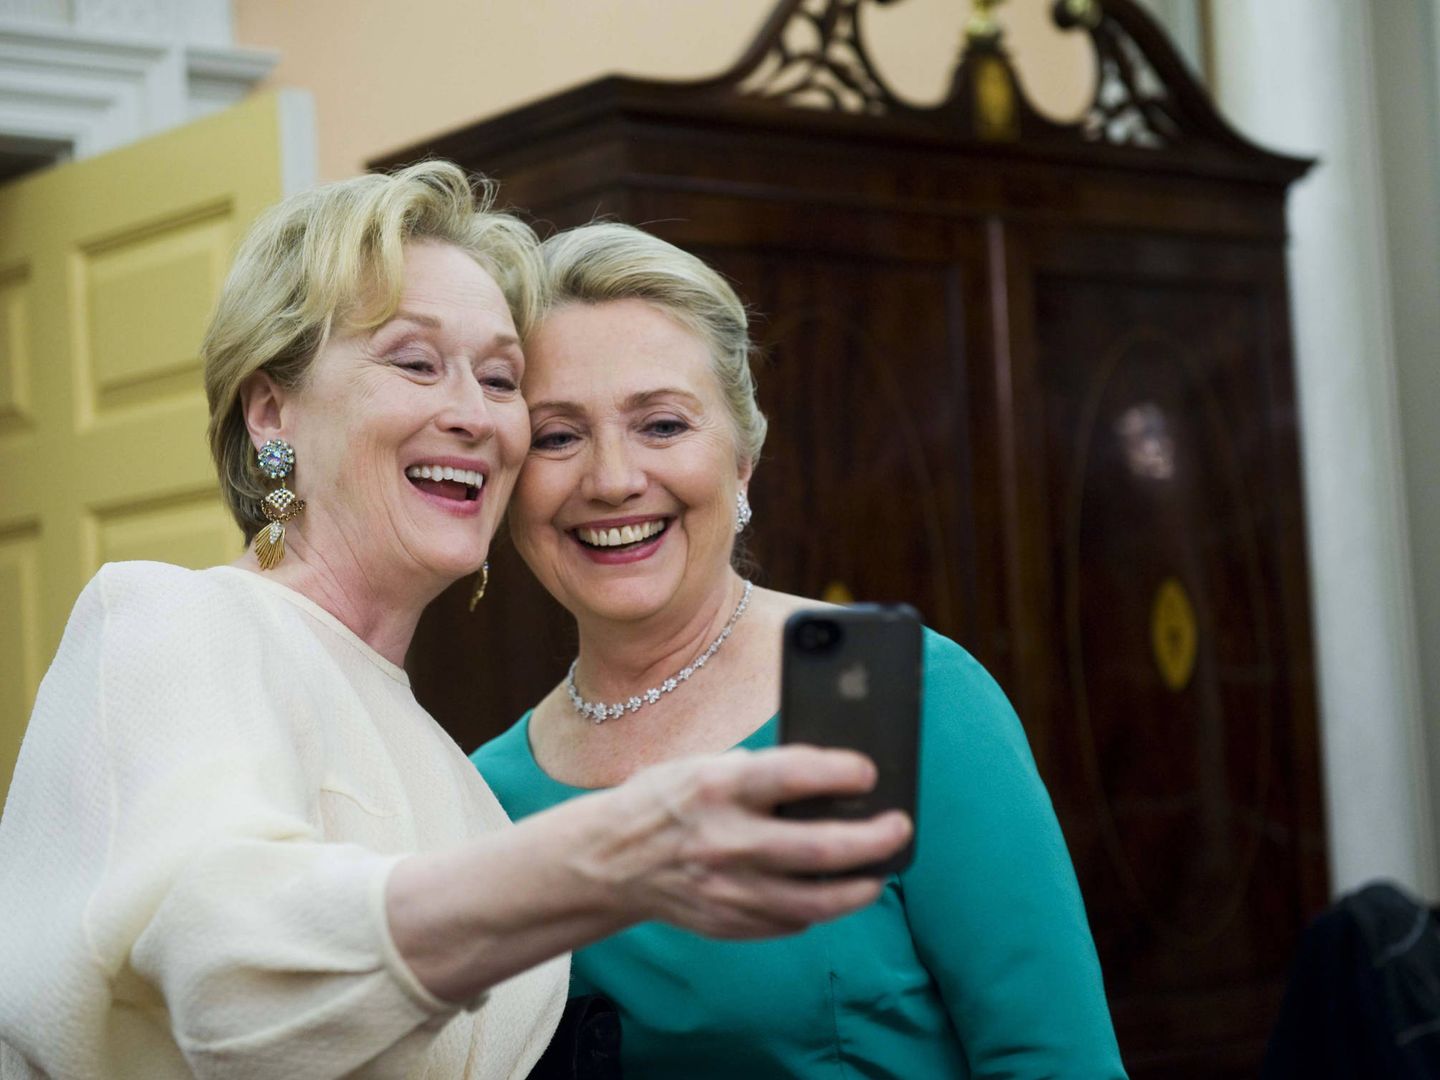 Maryl Streep y Hillary Clinton haciéndose un selfie (Gtres)